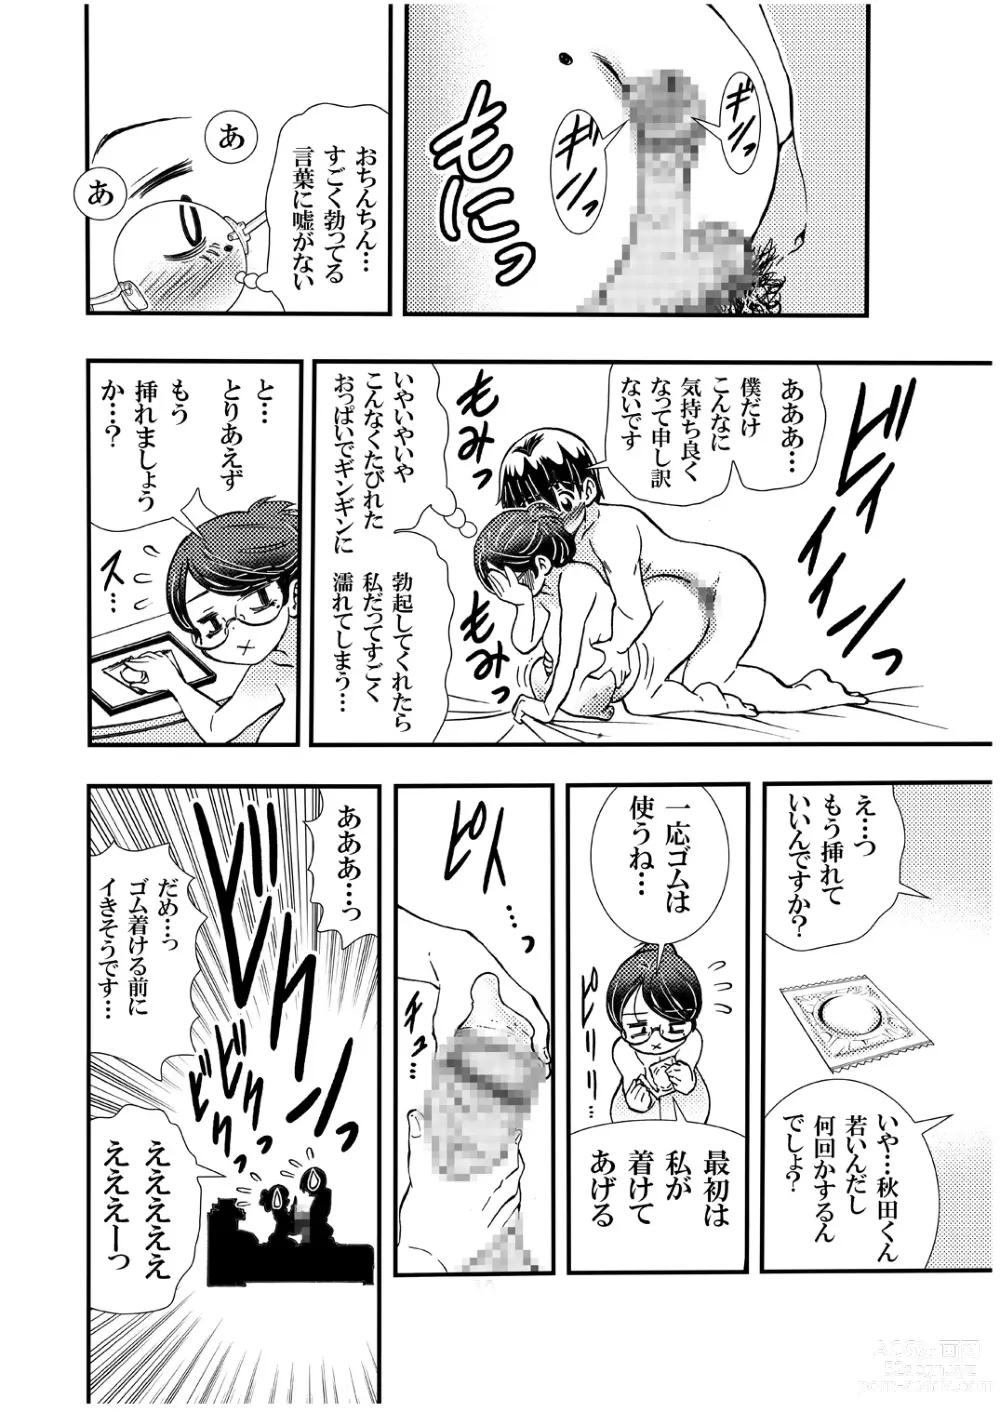 Page 12 of doujinshi Jitome Joshi Onna ni Modoru